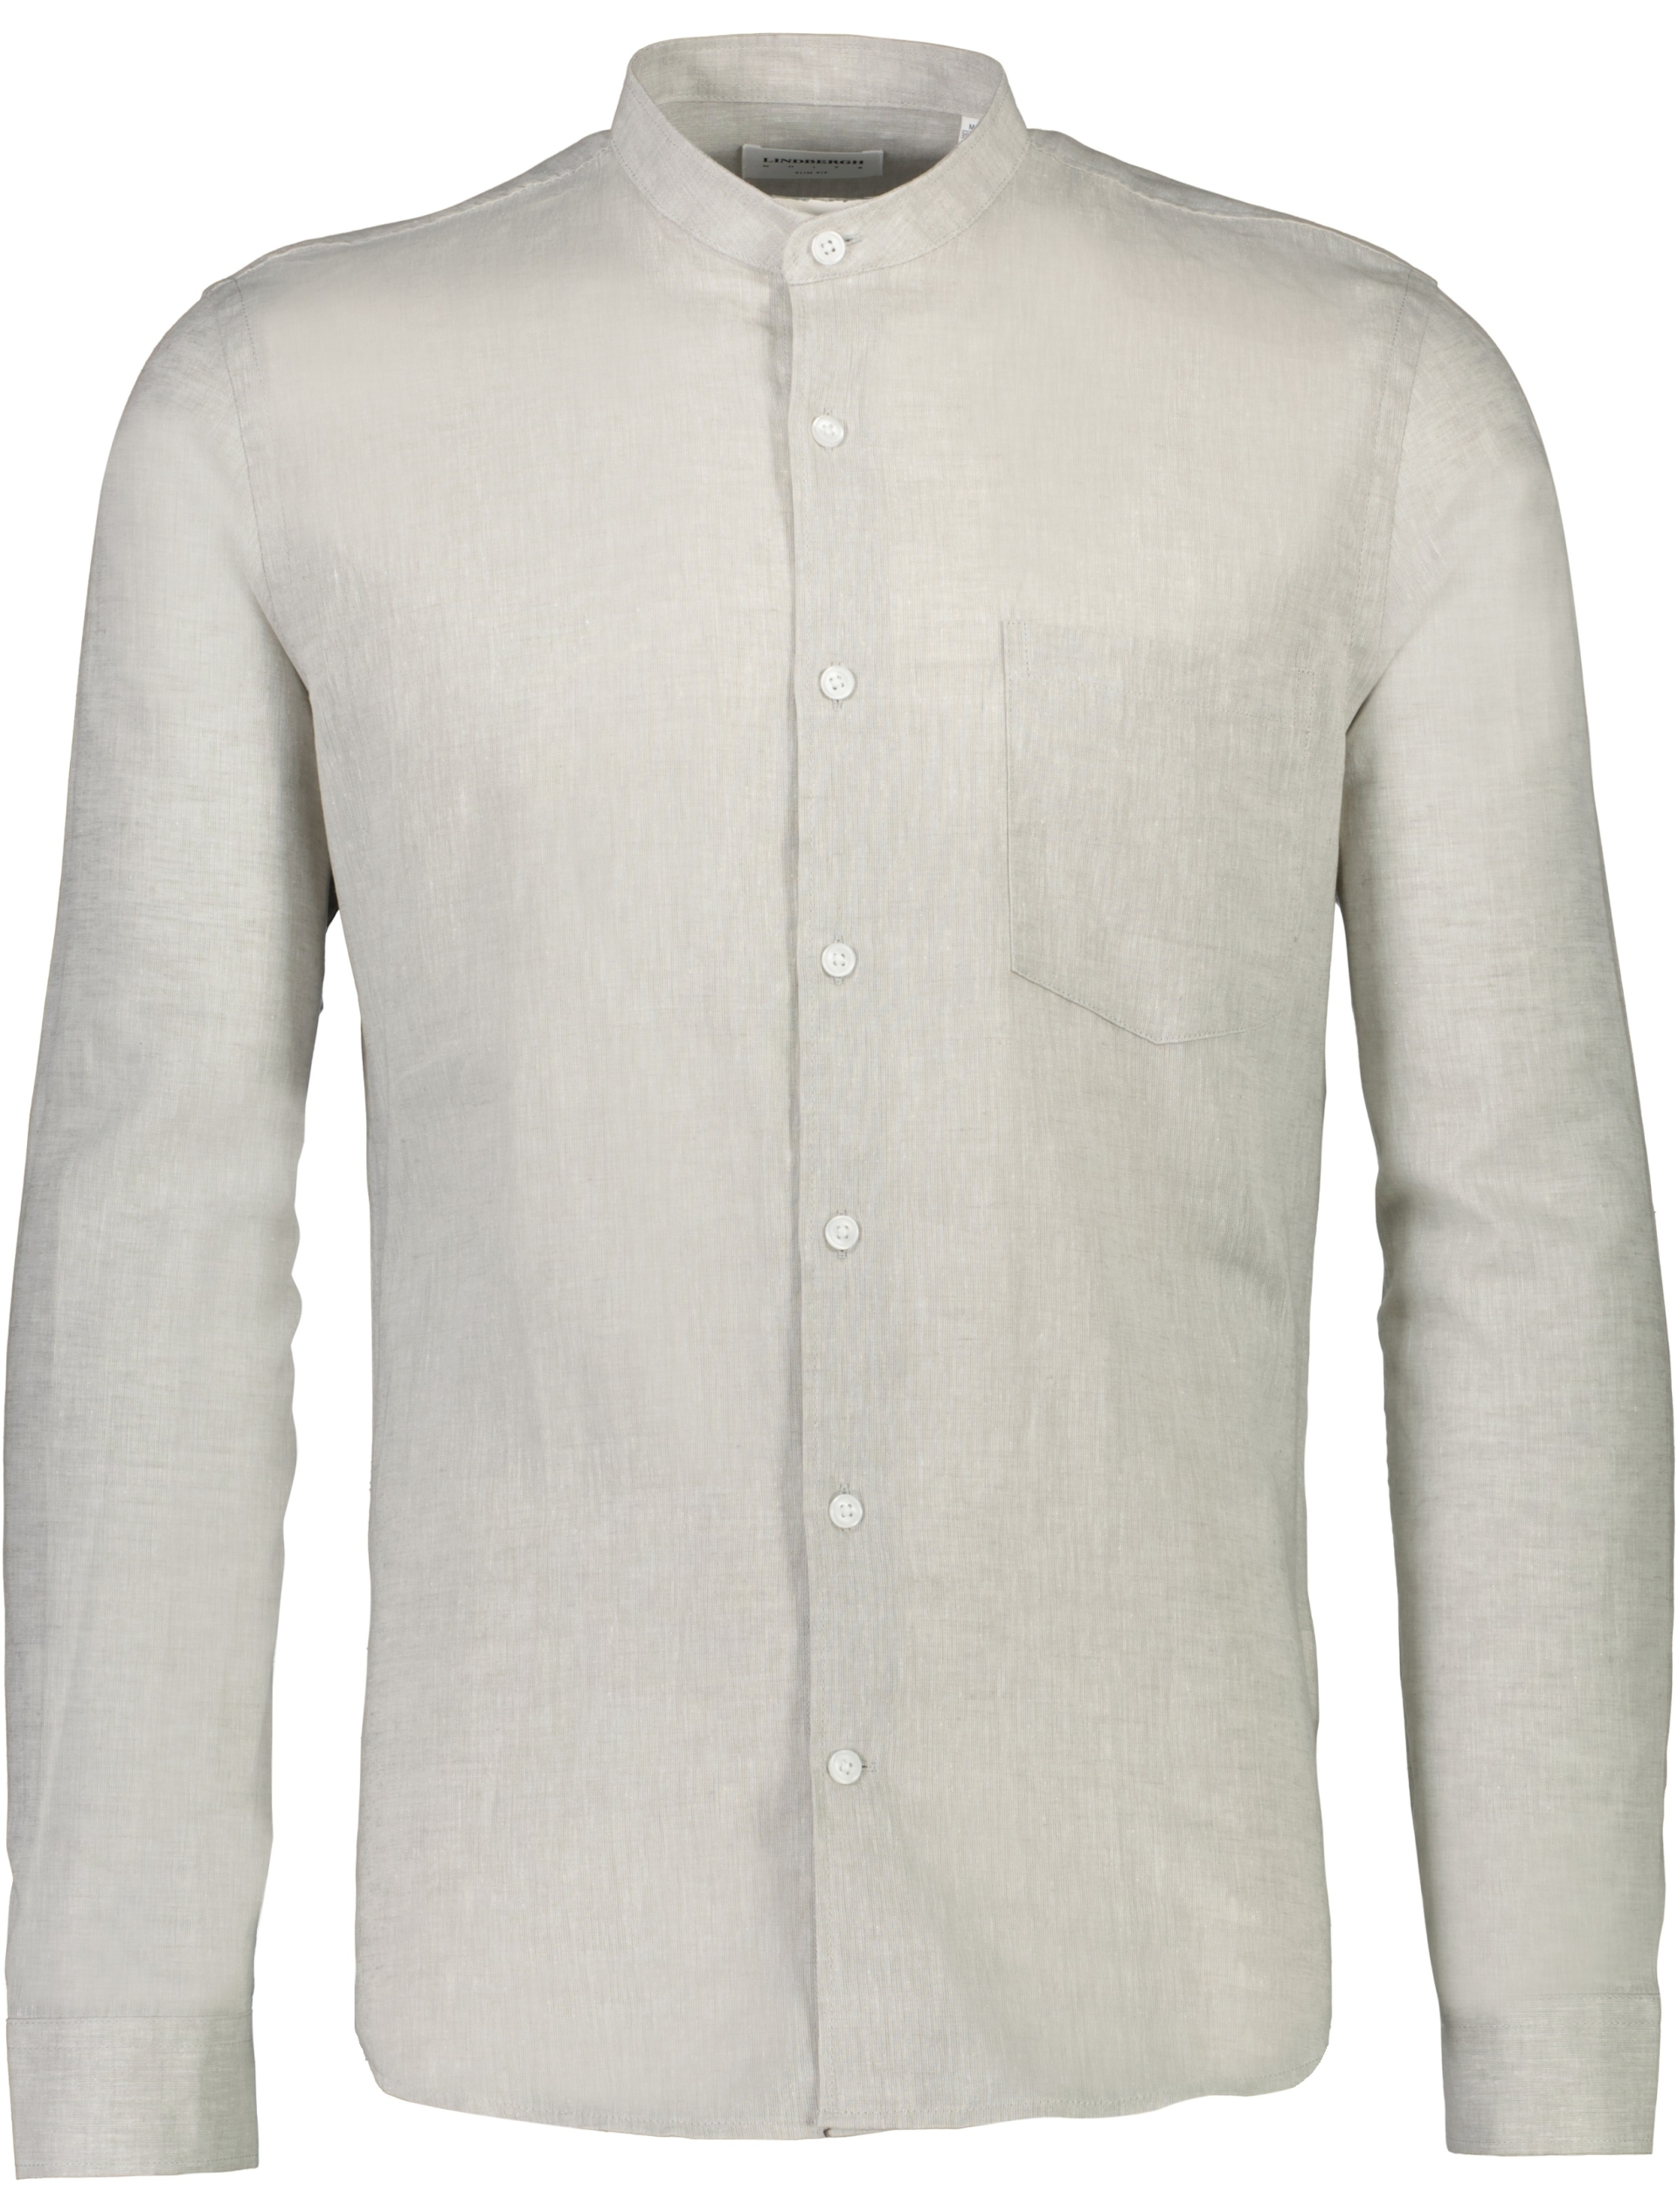 Lindbergh Linen shirt grey / lt grey